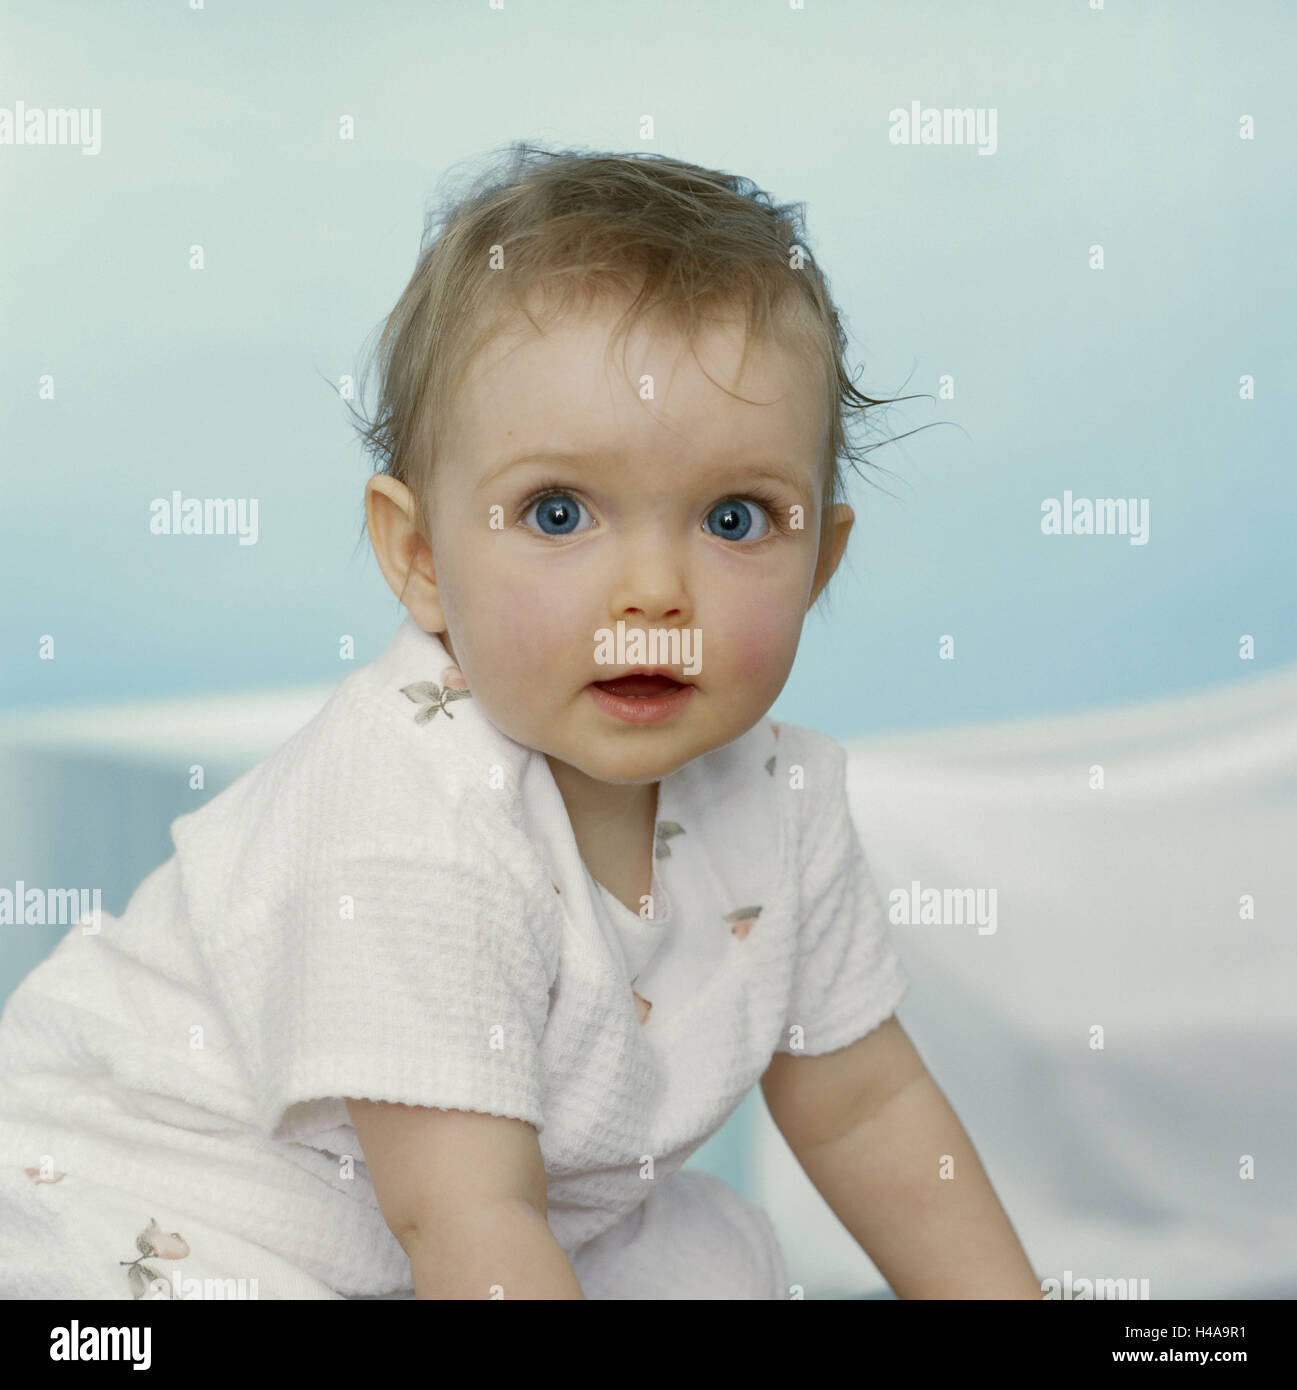 Il Toddler, ragazze, sorrisi, semi-ritratto, serie, persone bambino 9 mesi, top, sguardo fotocamera, sa eye-colore blu, infanzia liberamente, naturalezza, cutely pacificamente, interna Foto Stock